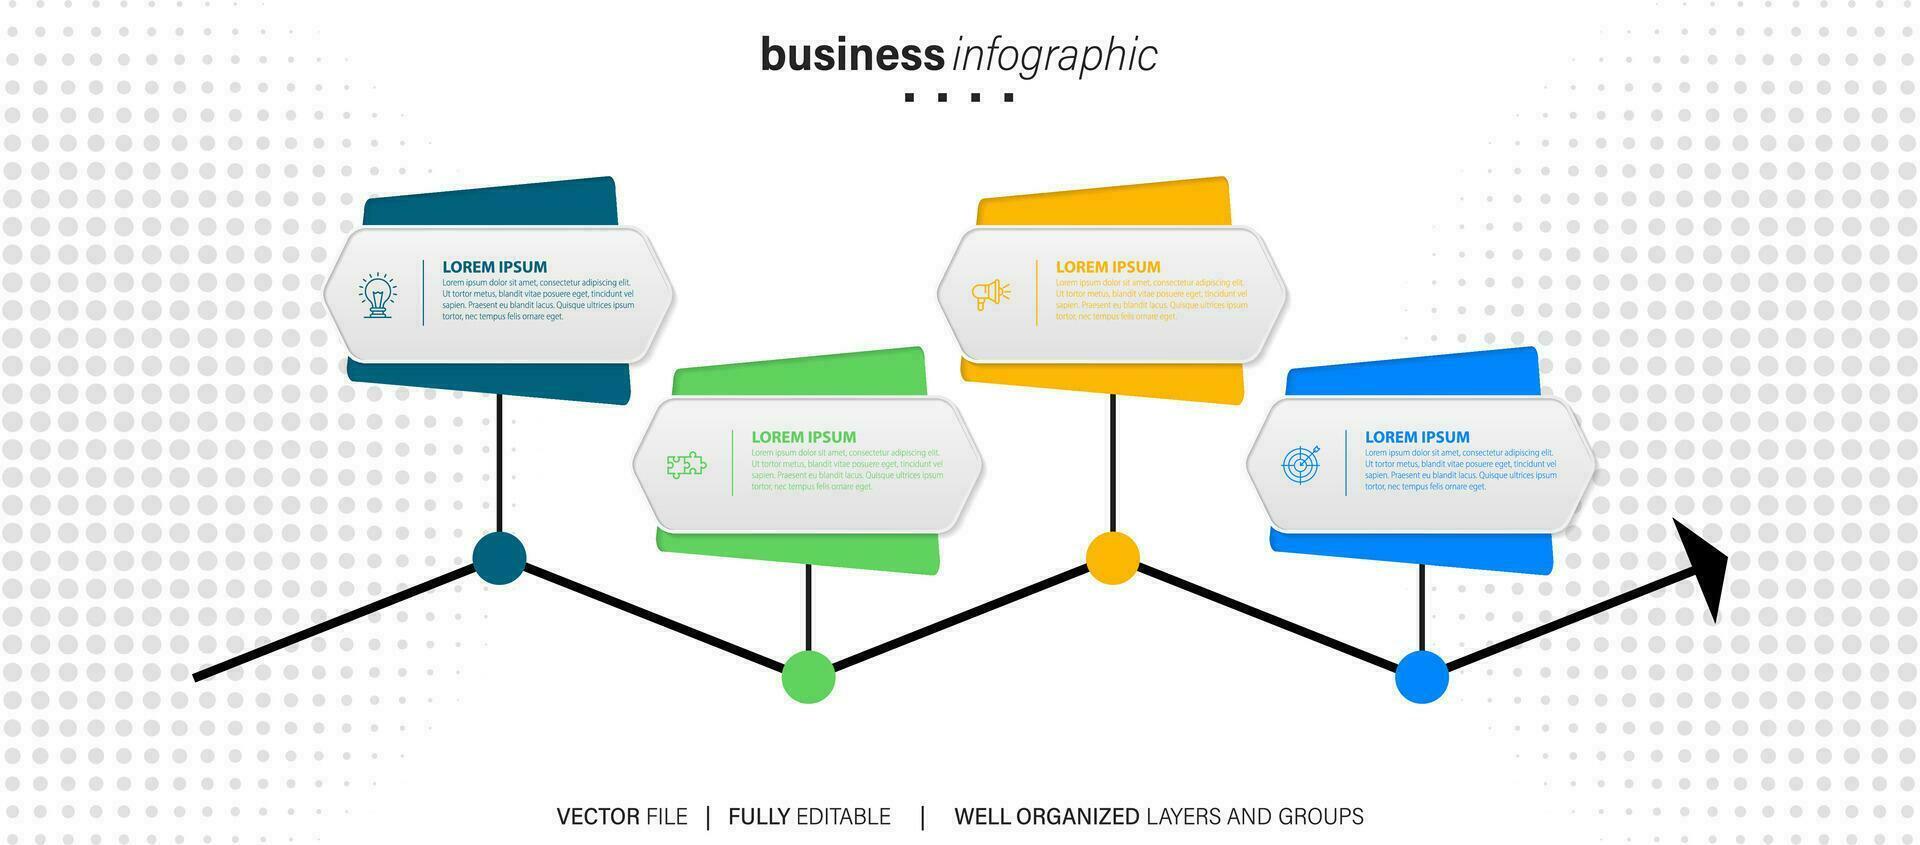 colección de vector circulo gráfico infografía plantillas para presentaciones, publicidad, diseños, anual informes. 4 4 opciones, pasos, partes.